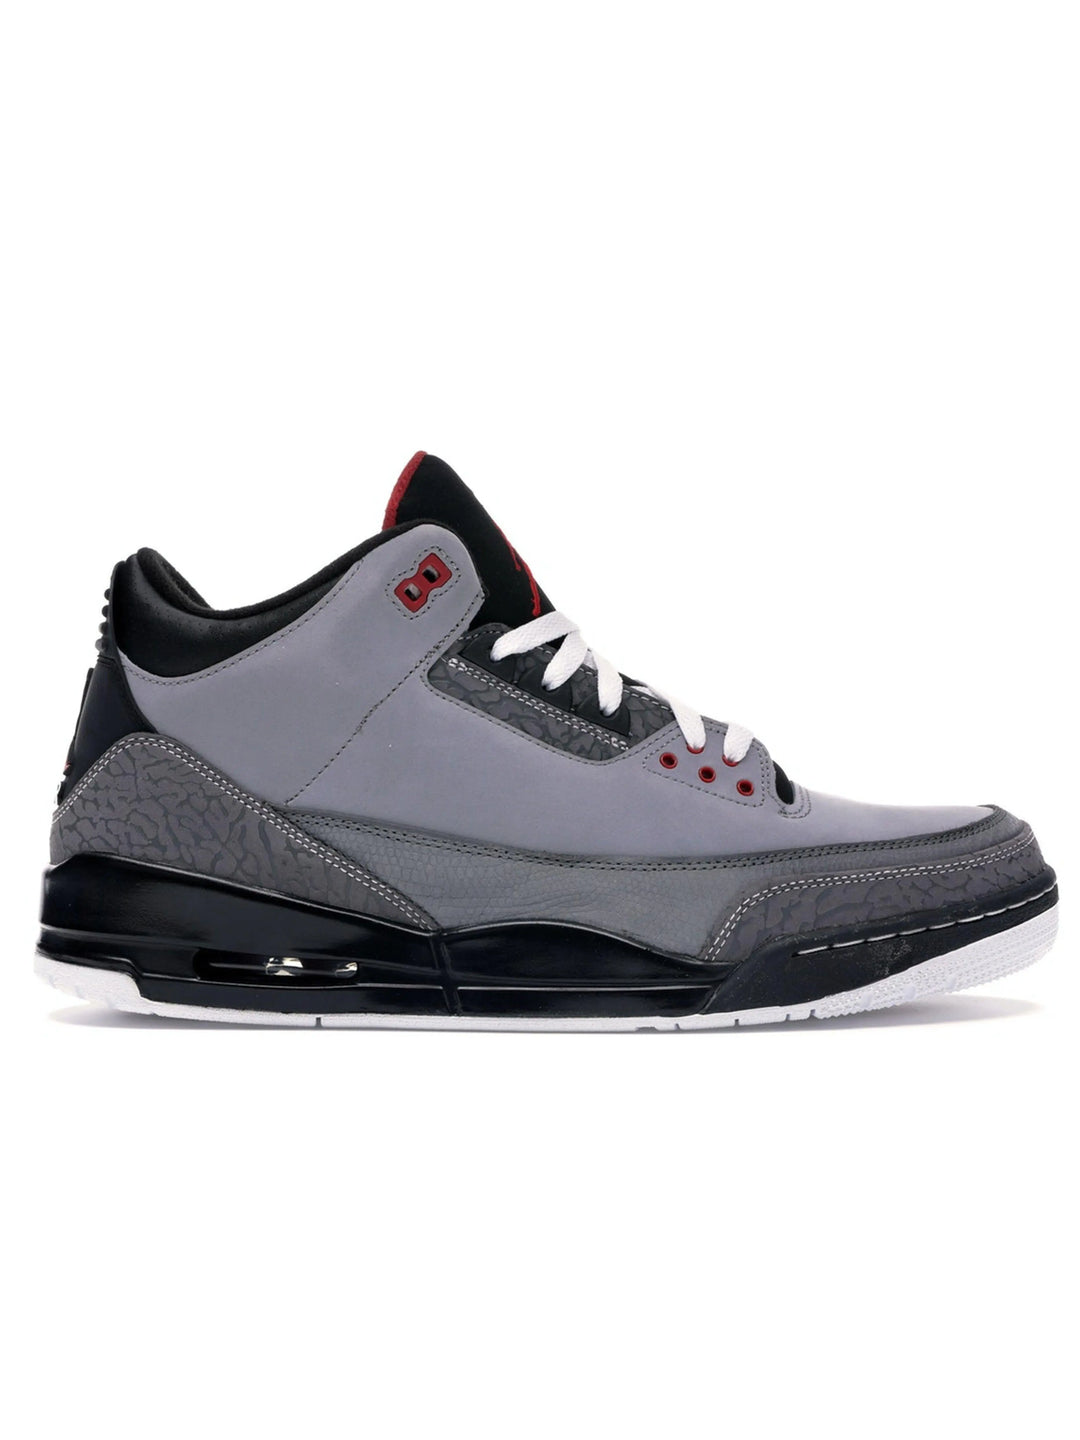 Nike Air Jordan 3 Stealth Grey (2011) Prior